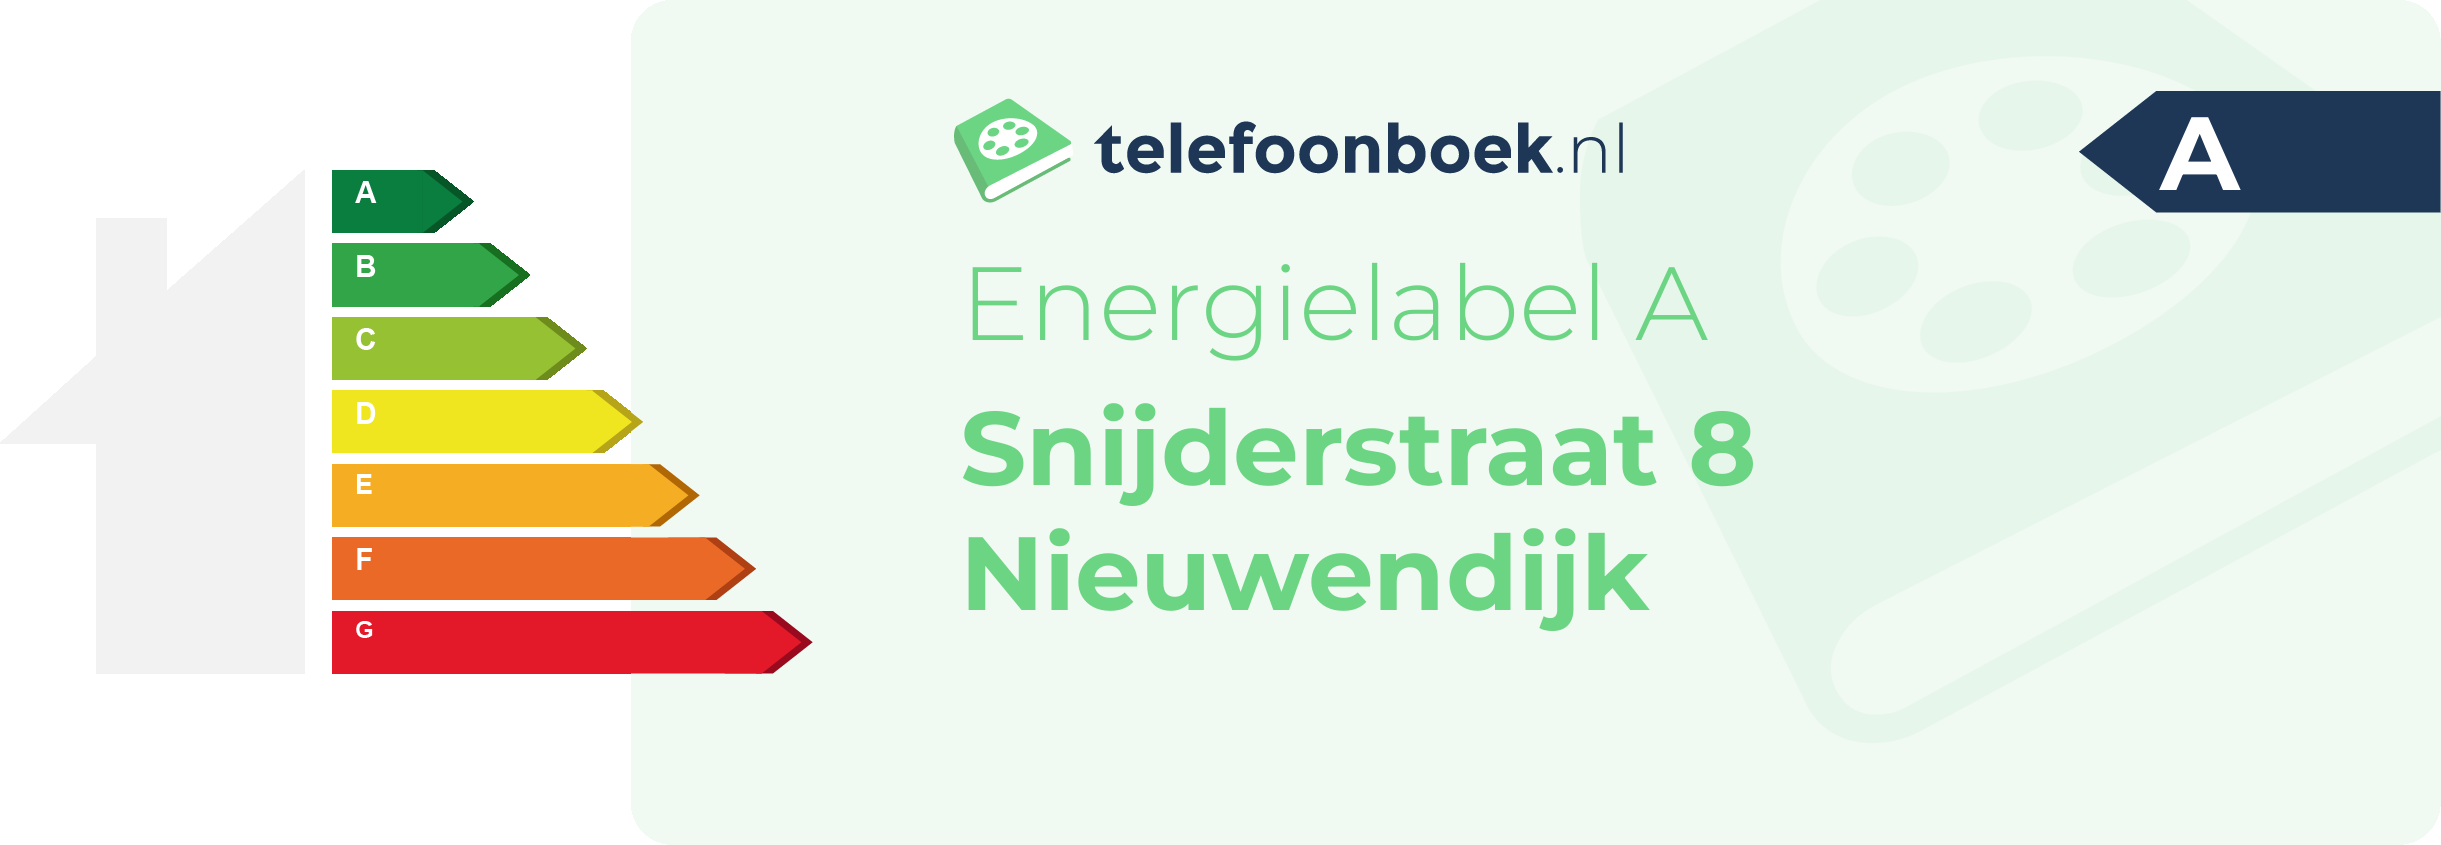 Energielabel Snijderstraat 8 Nieuwendijk